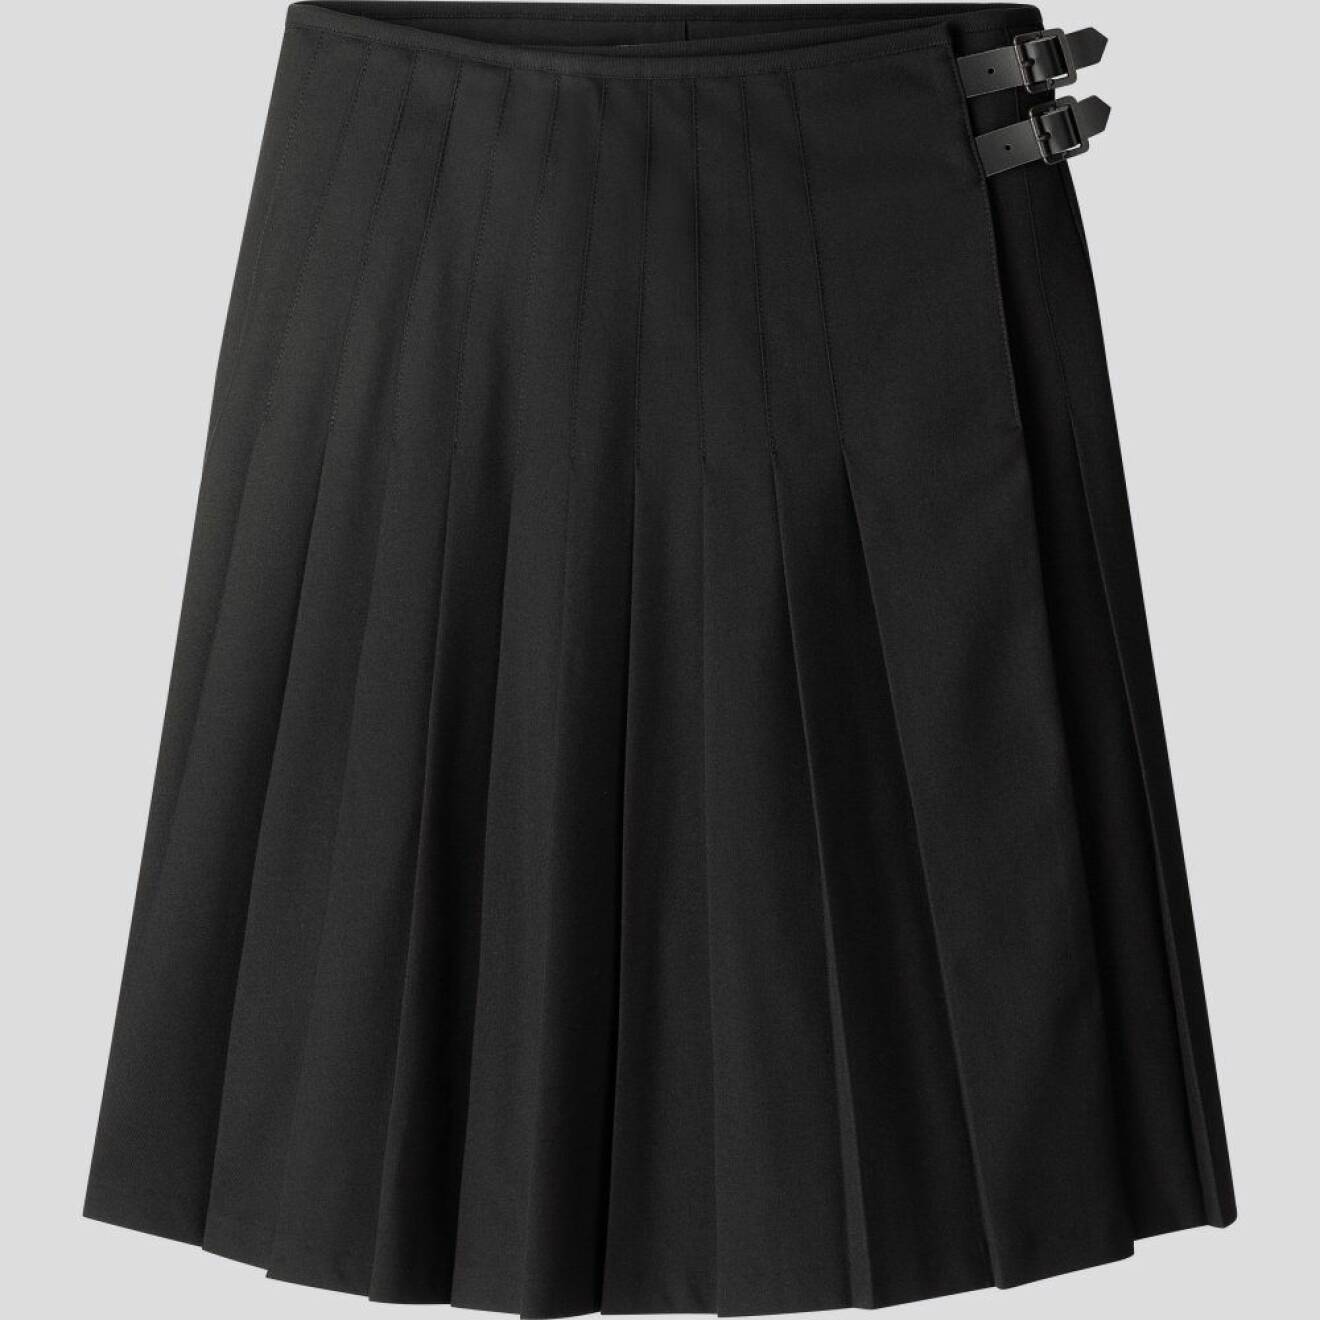 Uniqlo x JW Anderson FW19, svart kjol